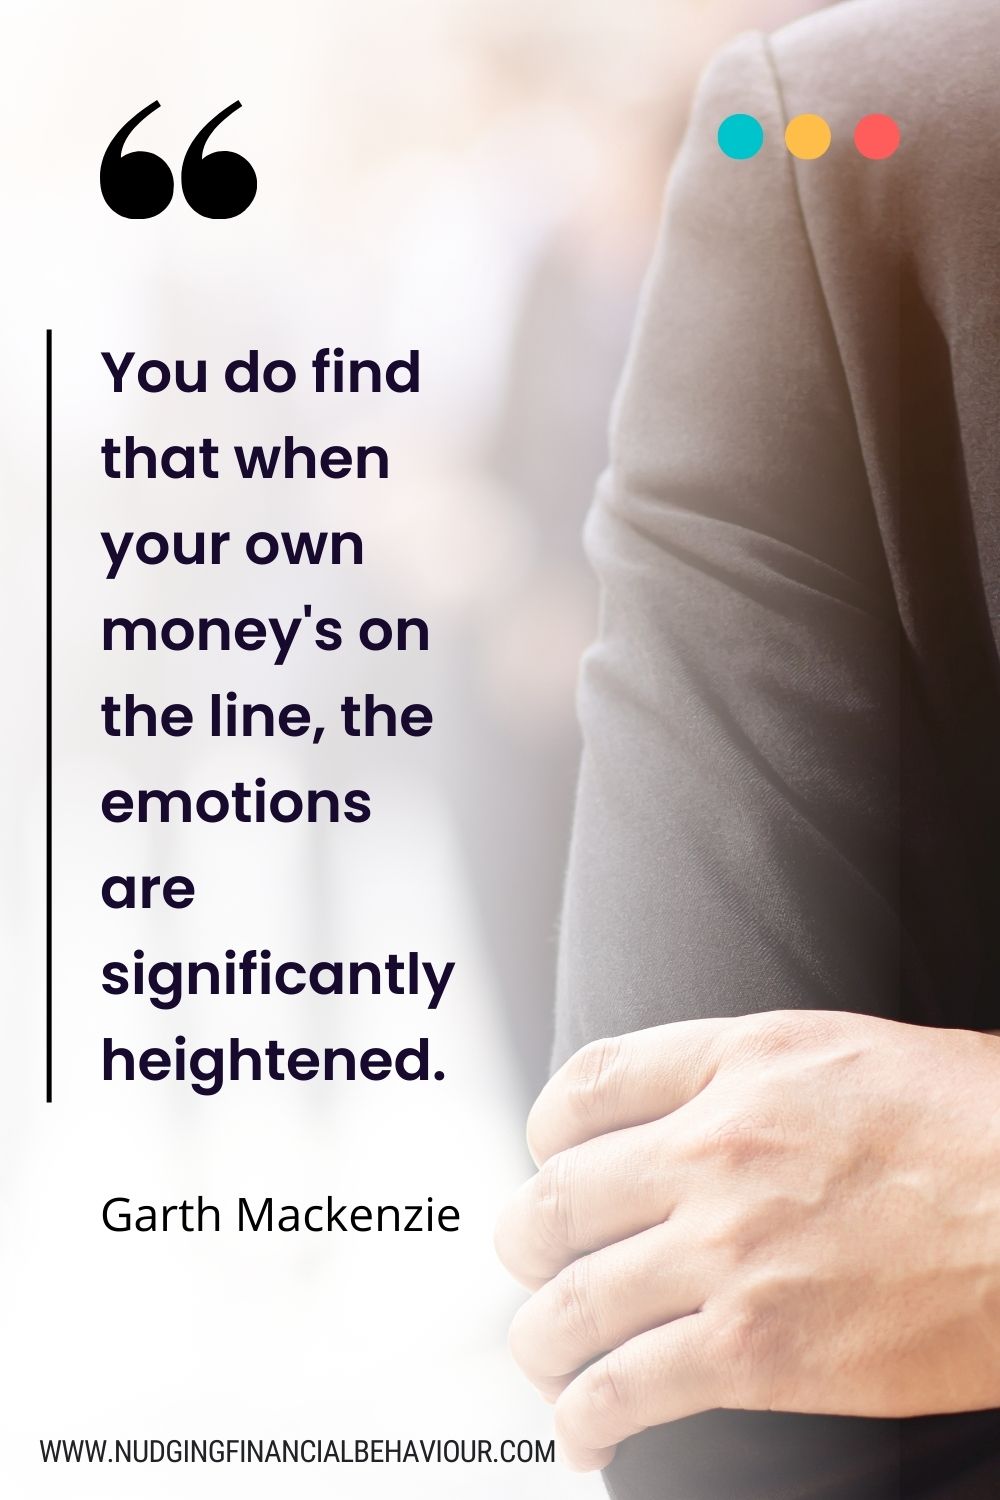 Money quote from Garth Mackenzie